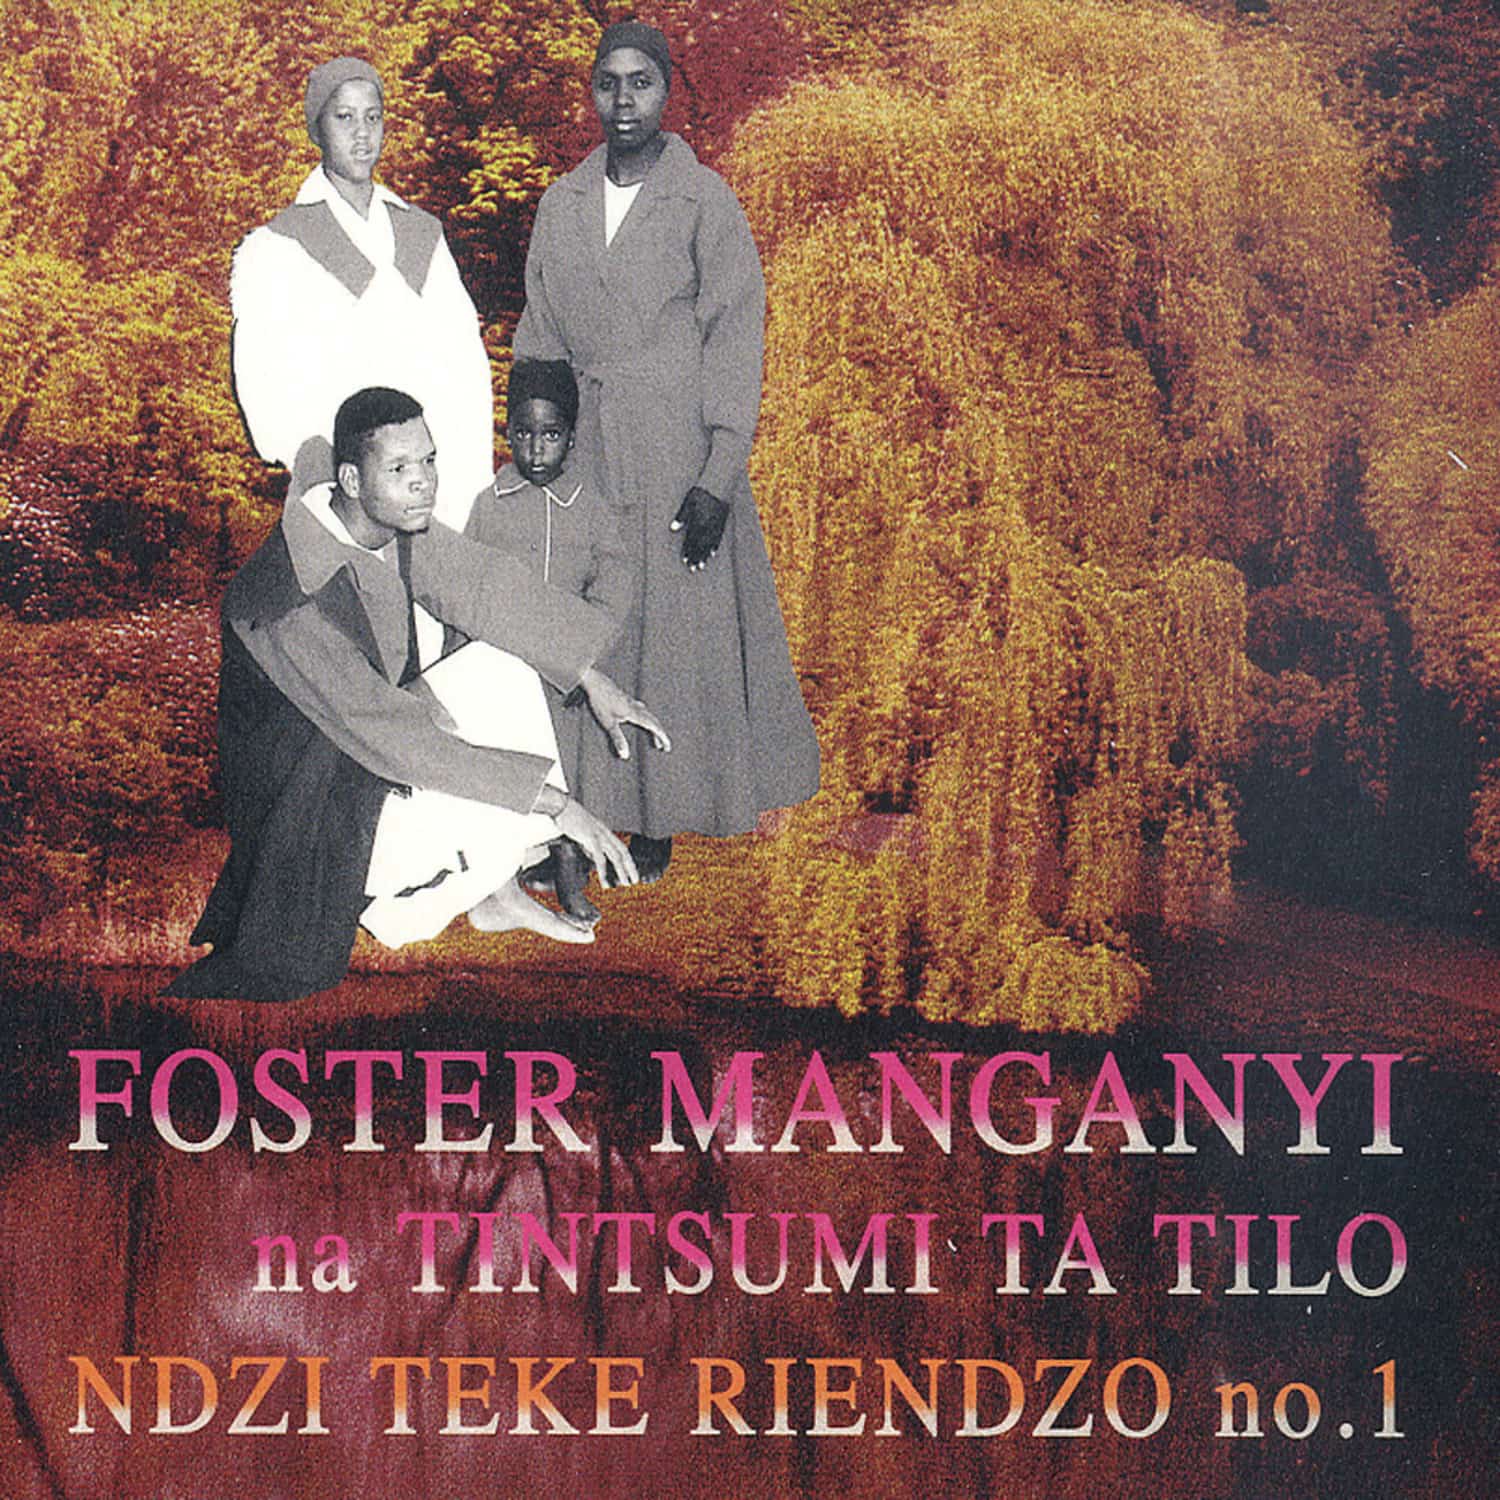 Foster Manganyi - NDZI TEKE RIENDZO 